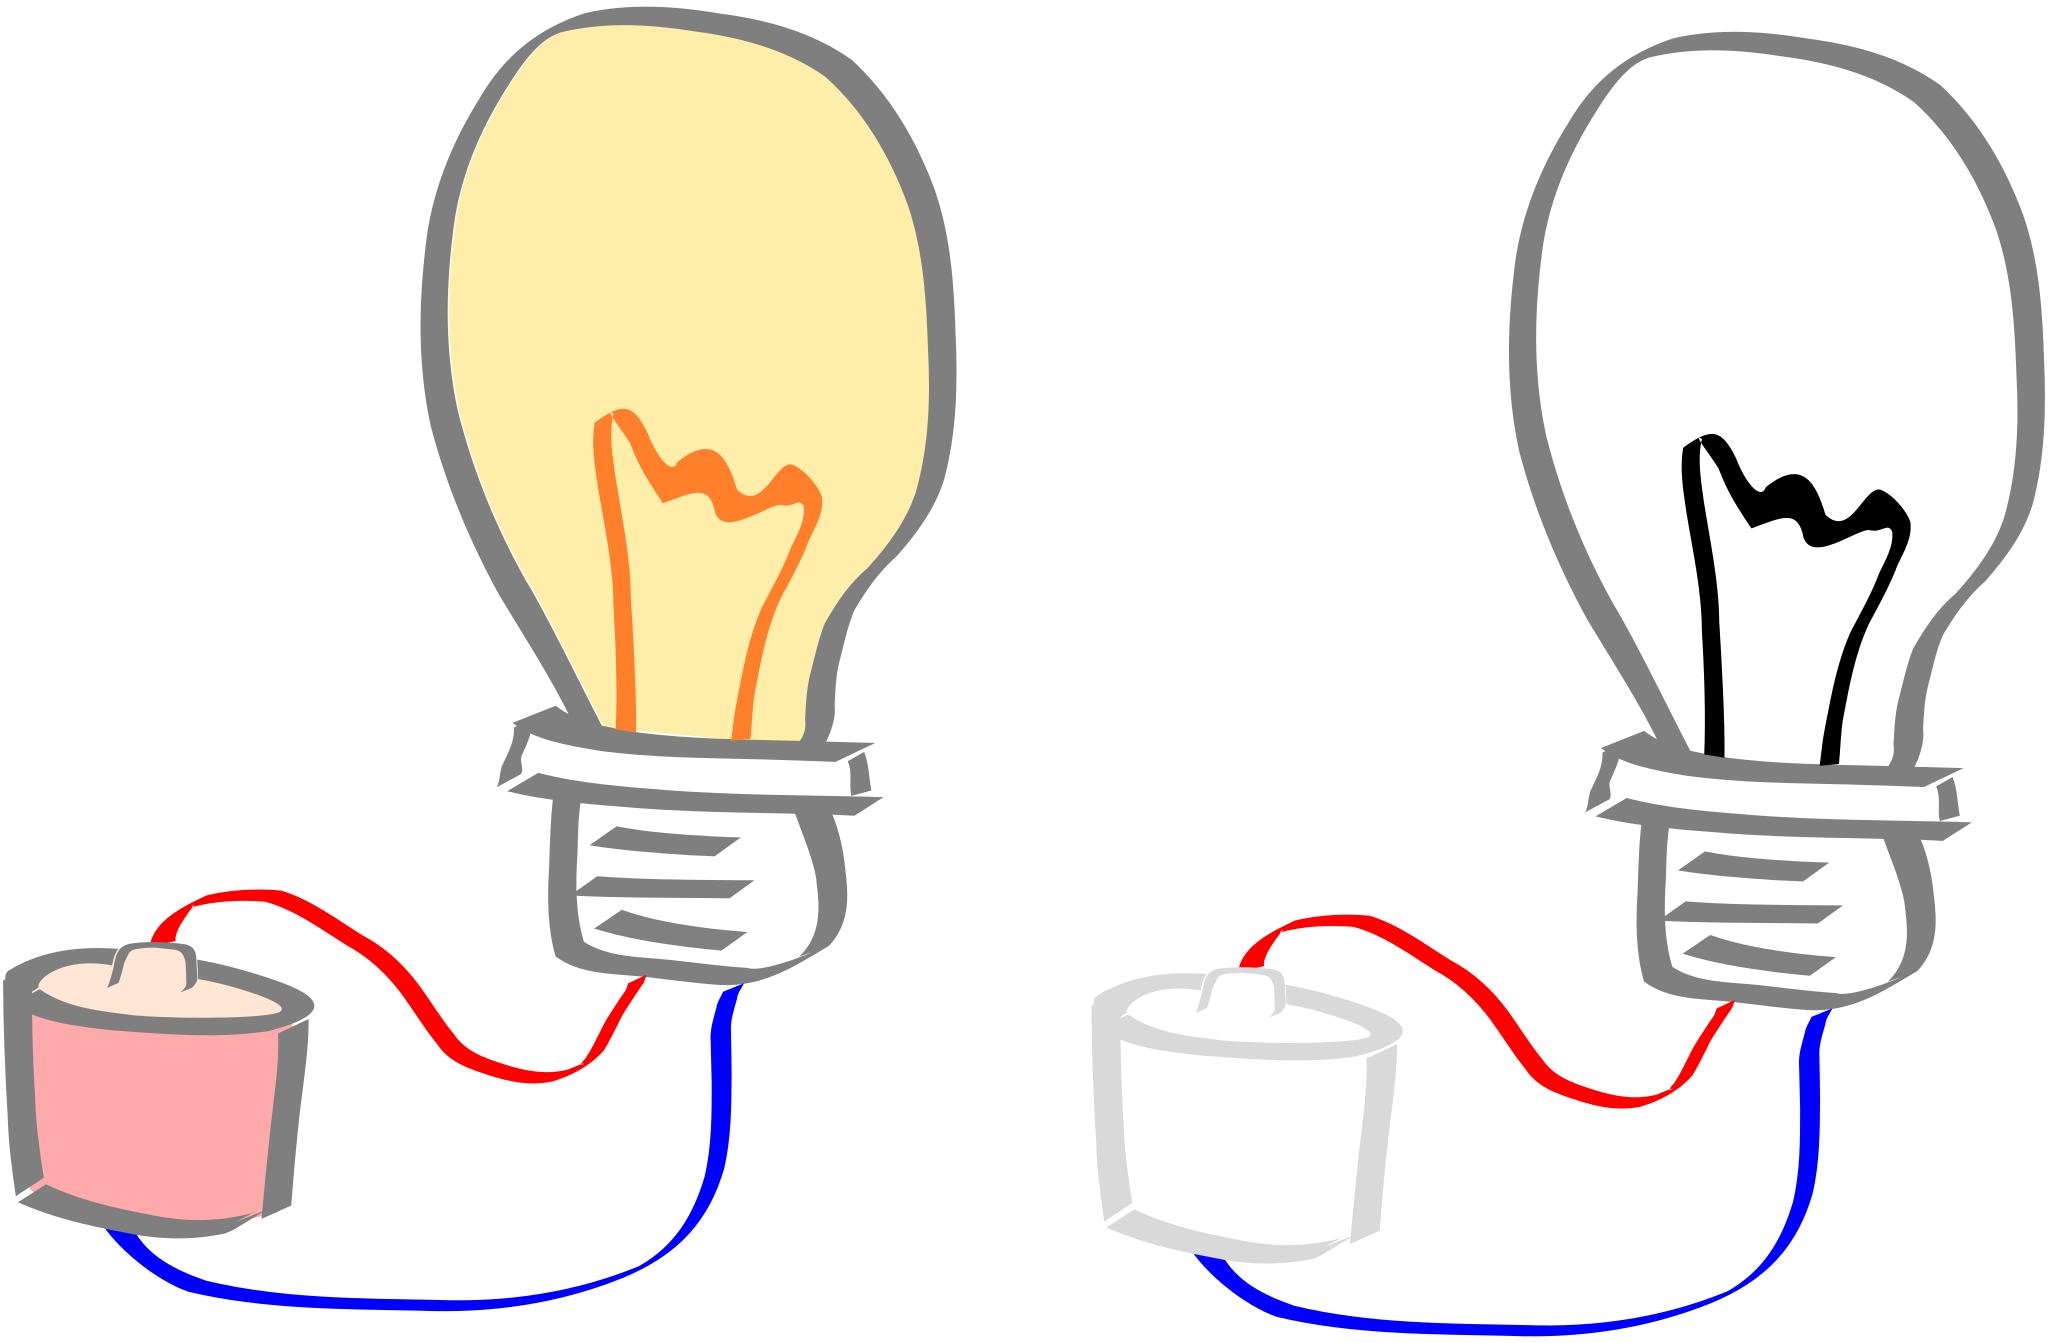 Иллюстрации с изображением электрической лампочки